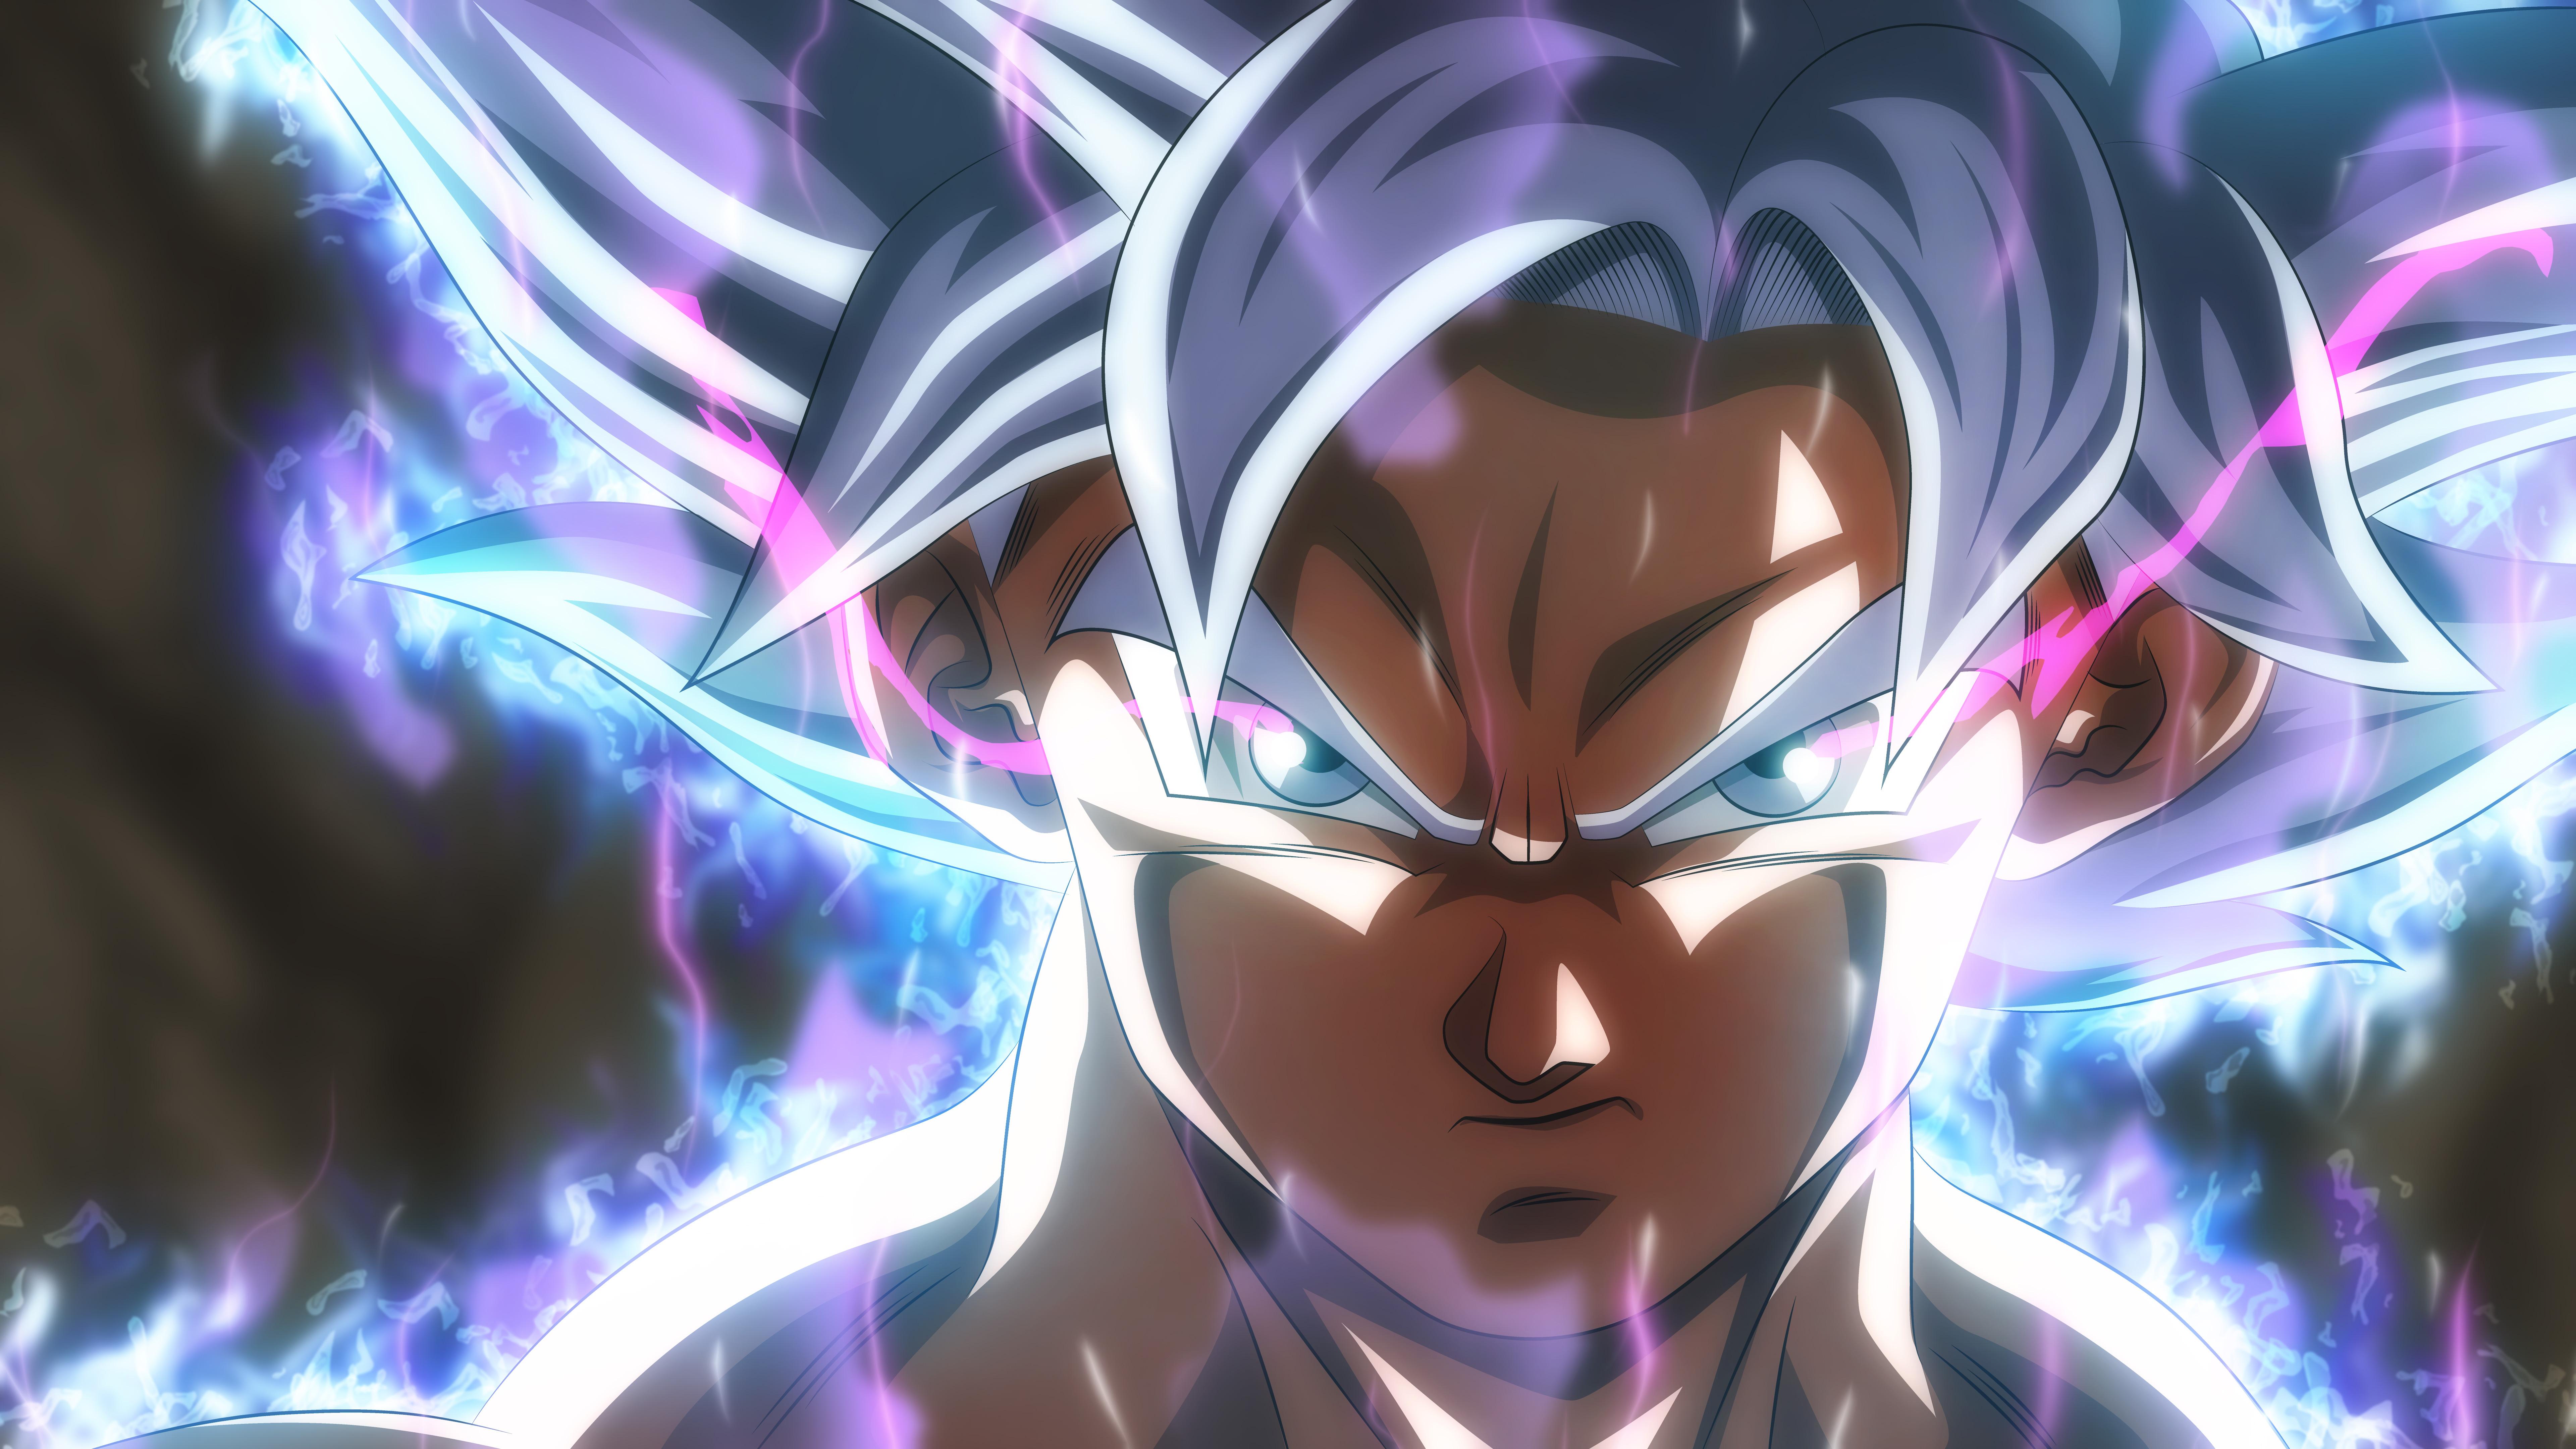 7680 x 4320 · jpeg - Son Goku Dragon Ball Super 8k Anime, HD Anime, 4k Wallpapers, Images ...